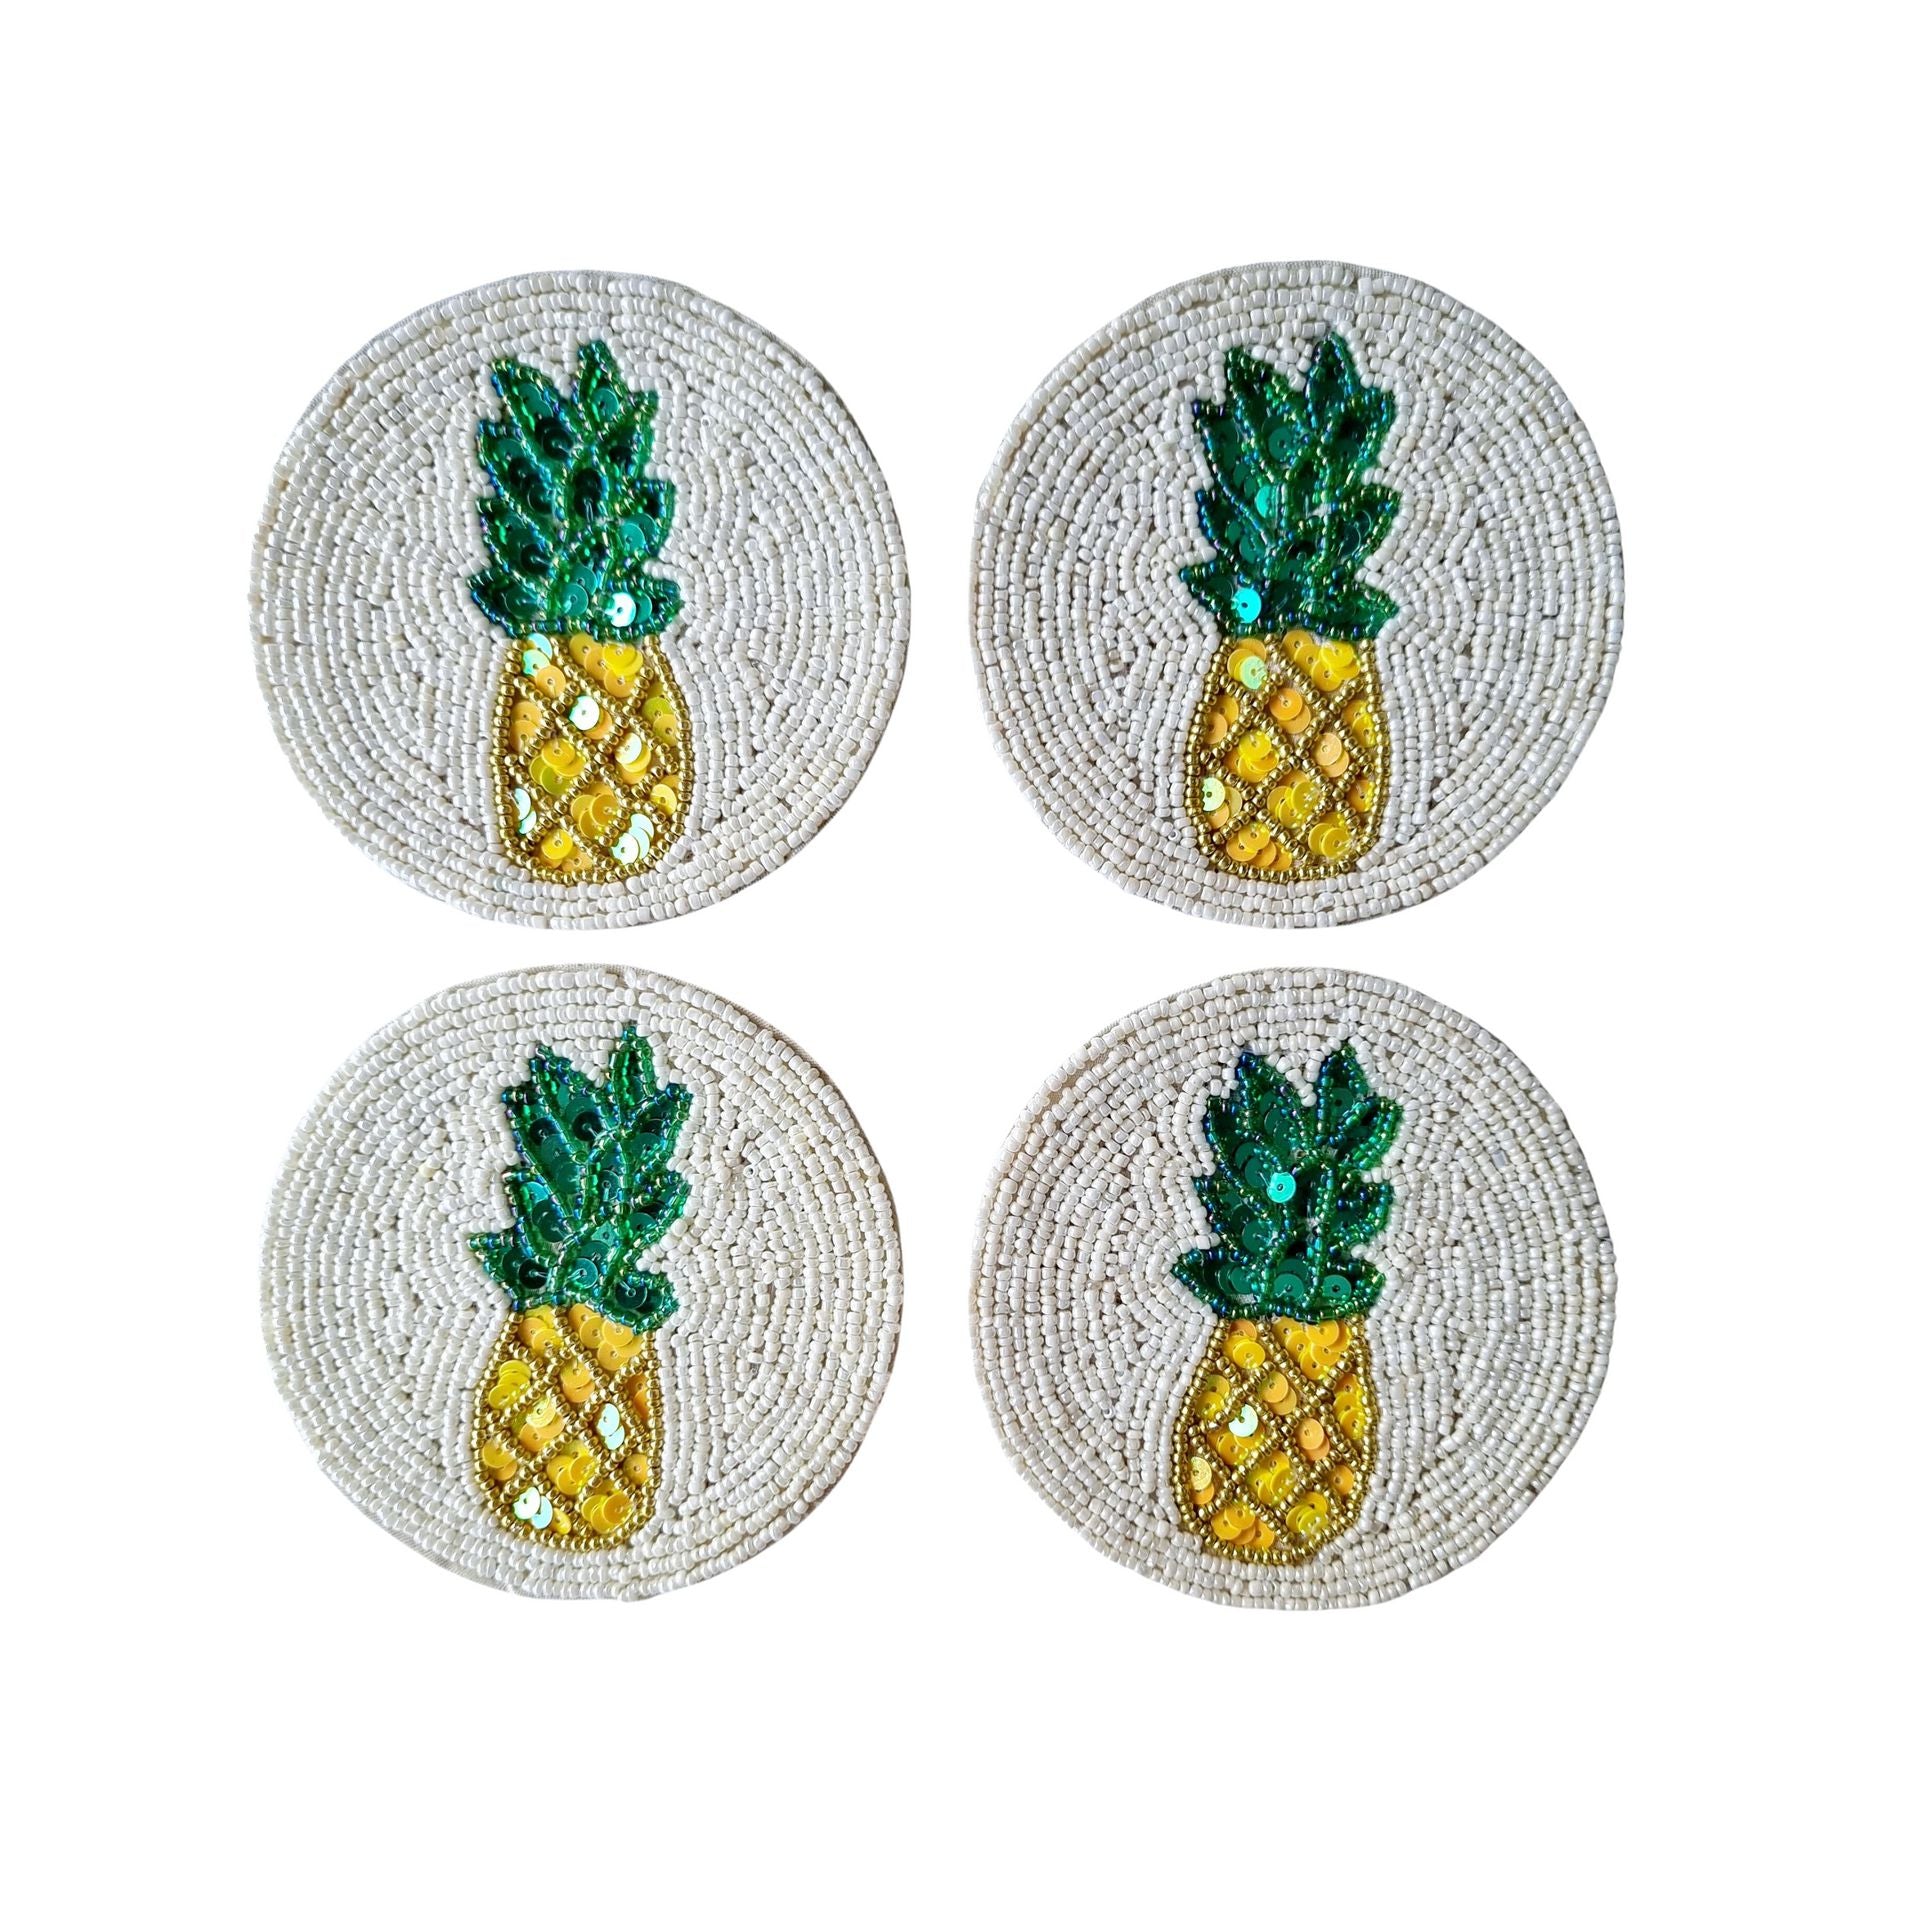 Beaded Coaster Set of 4 - Pineapple-Decor Items-Zoda-The Bay Room